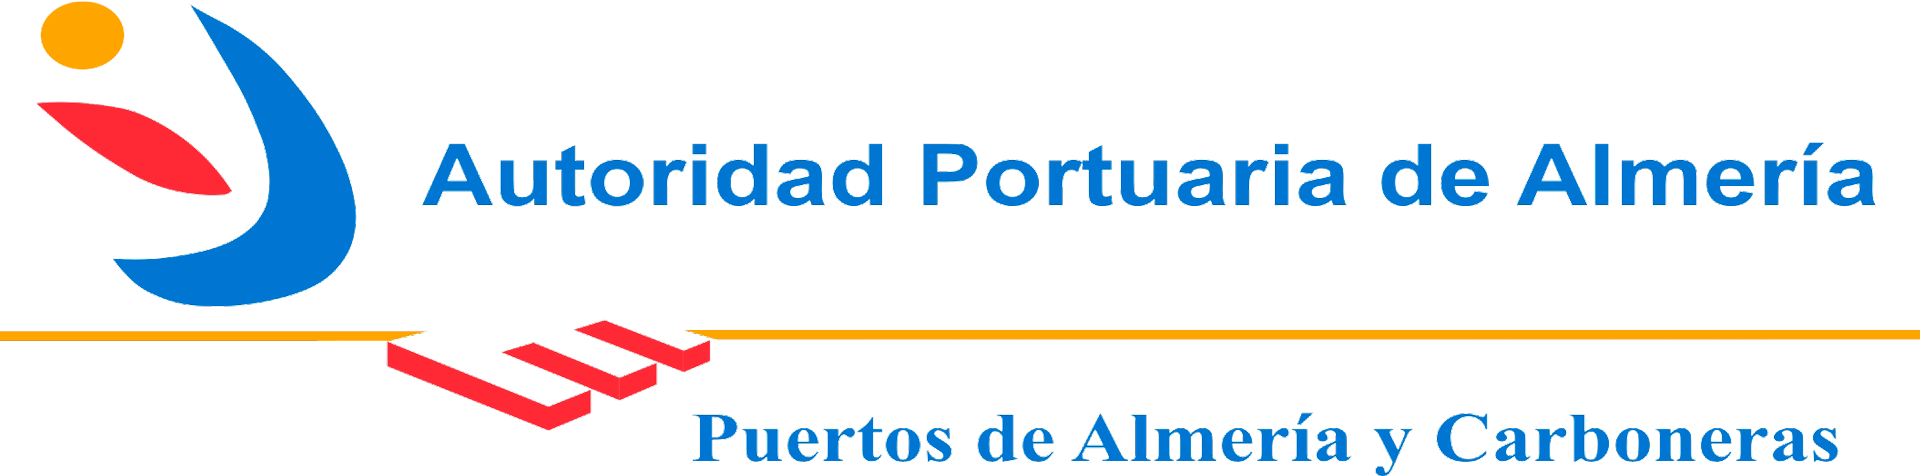 Agenda Cultural Autoridad Portuaria de Almería